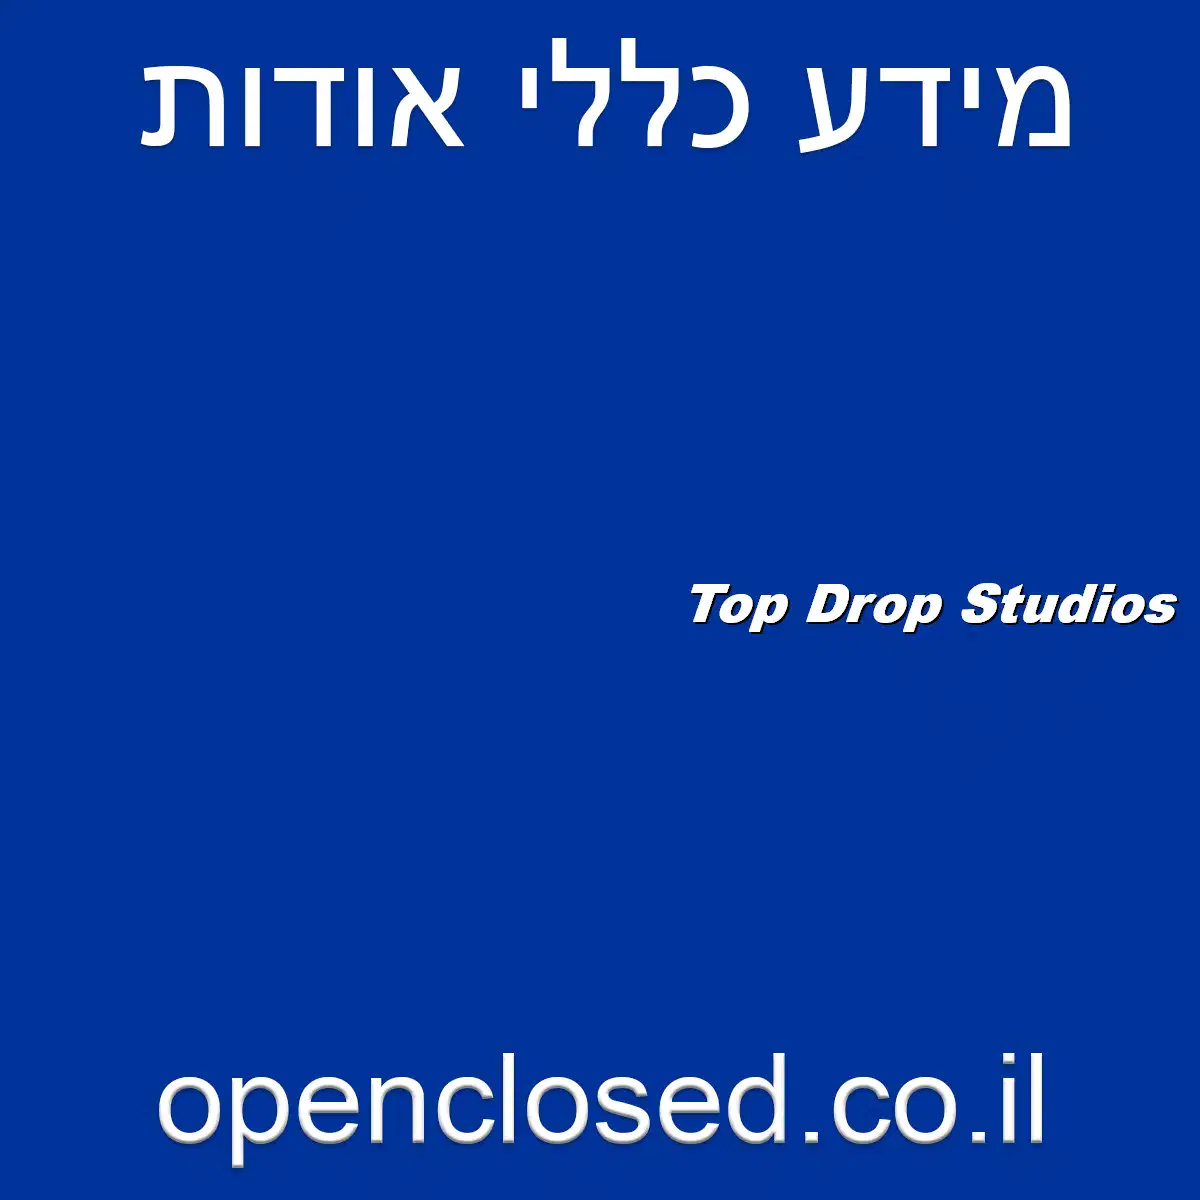 Top Drop Studios